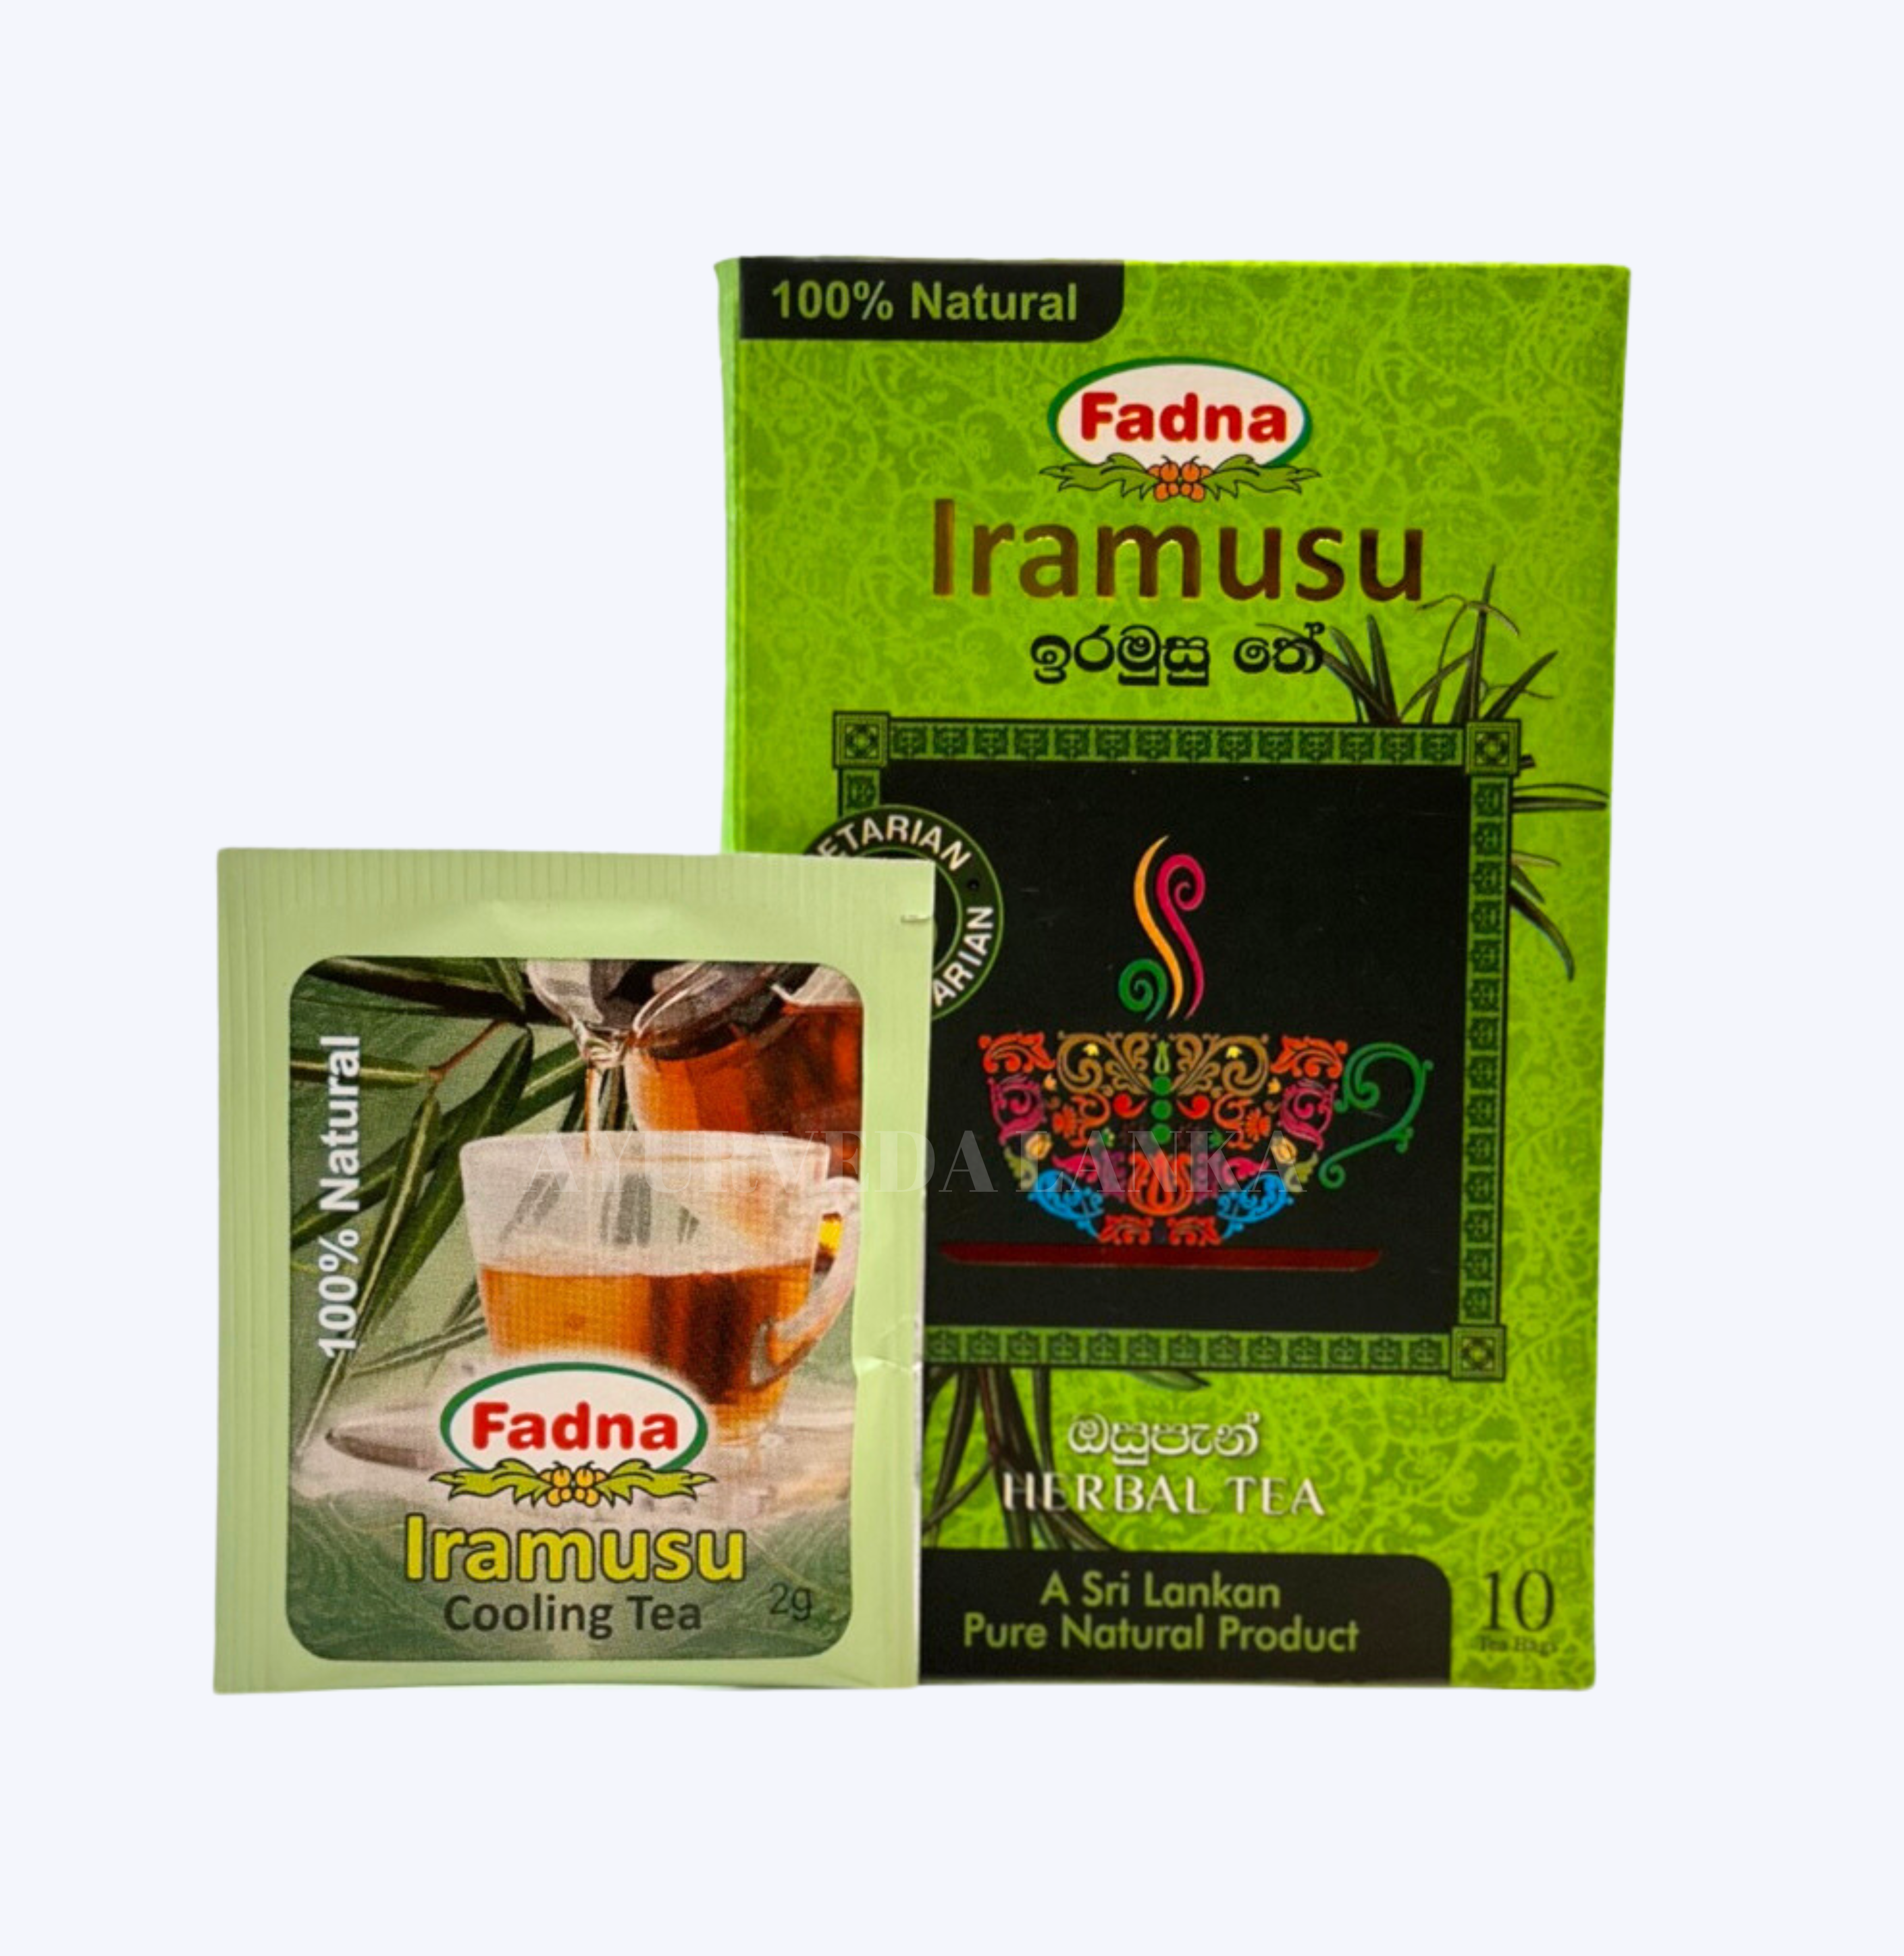 イラムスティー / Iramusu Tea 10 packs